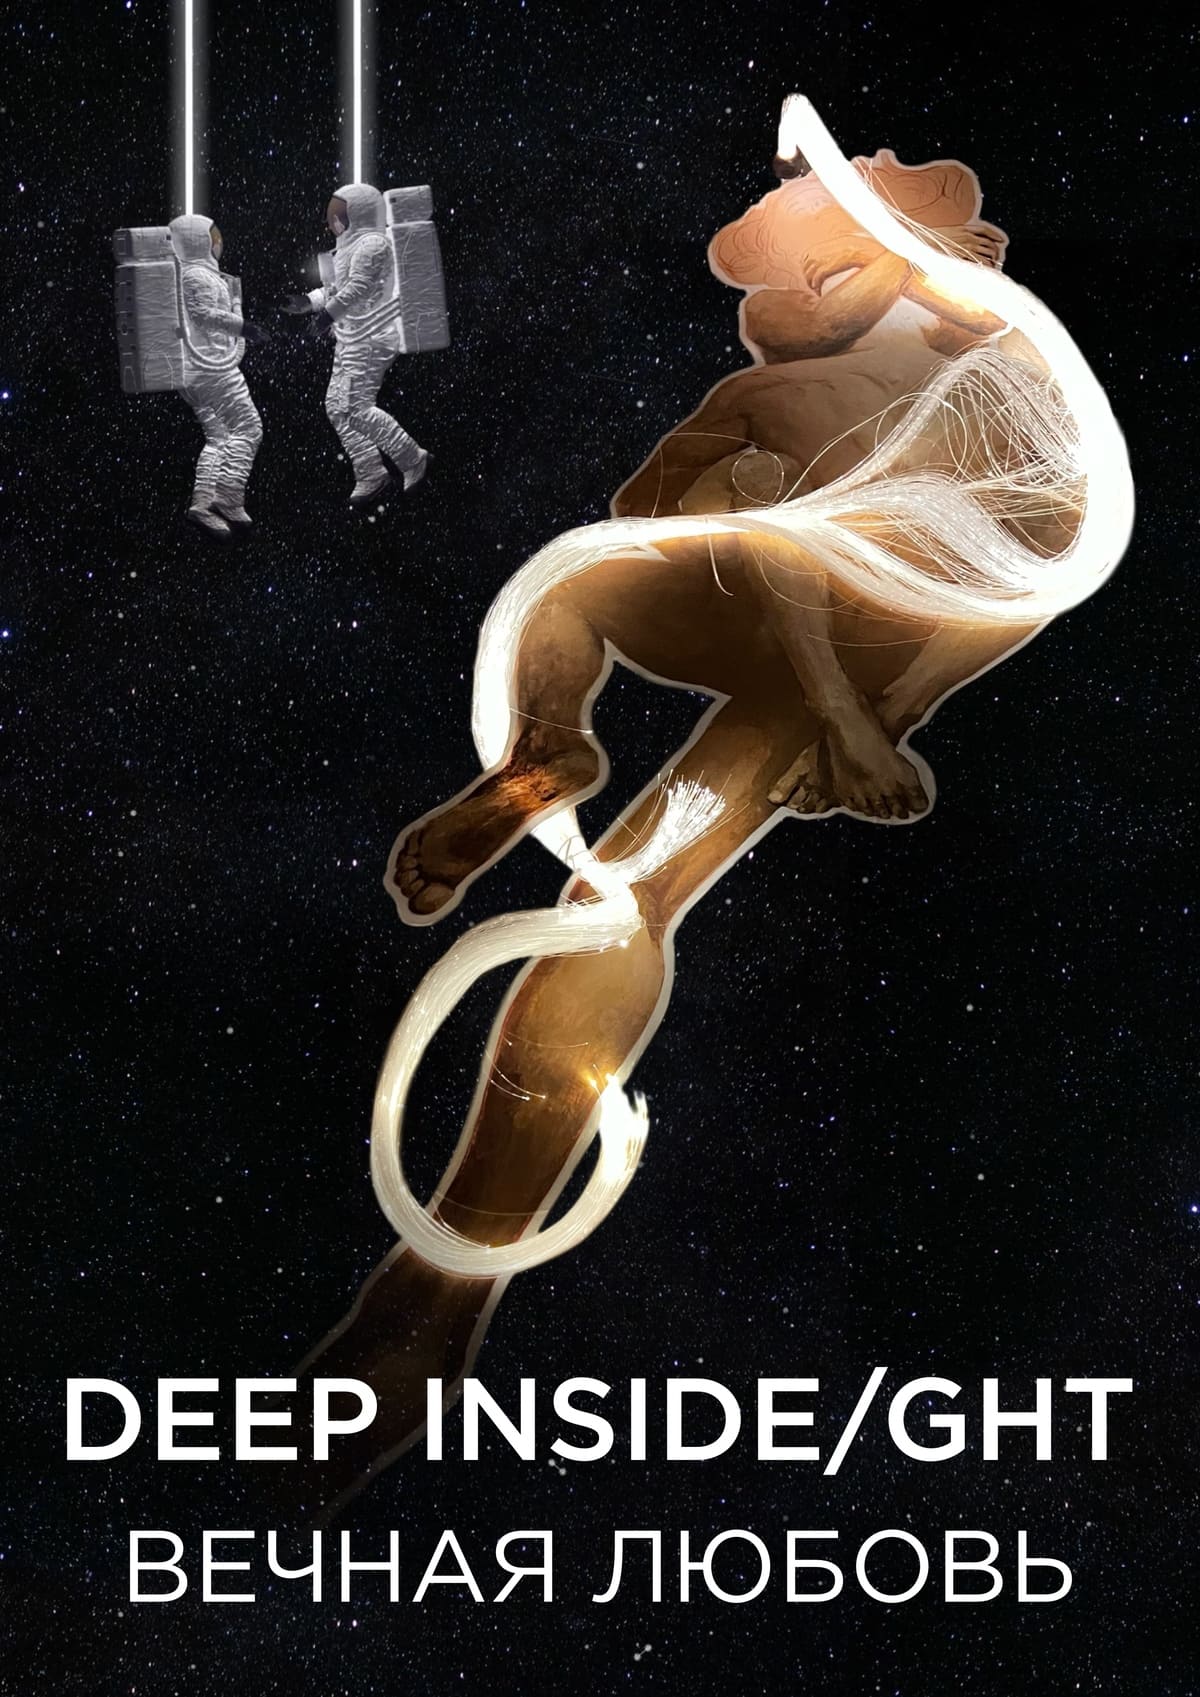 DEEP INSIDE/GHT